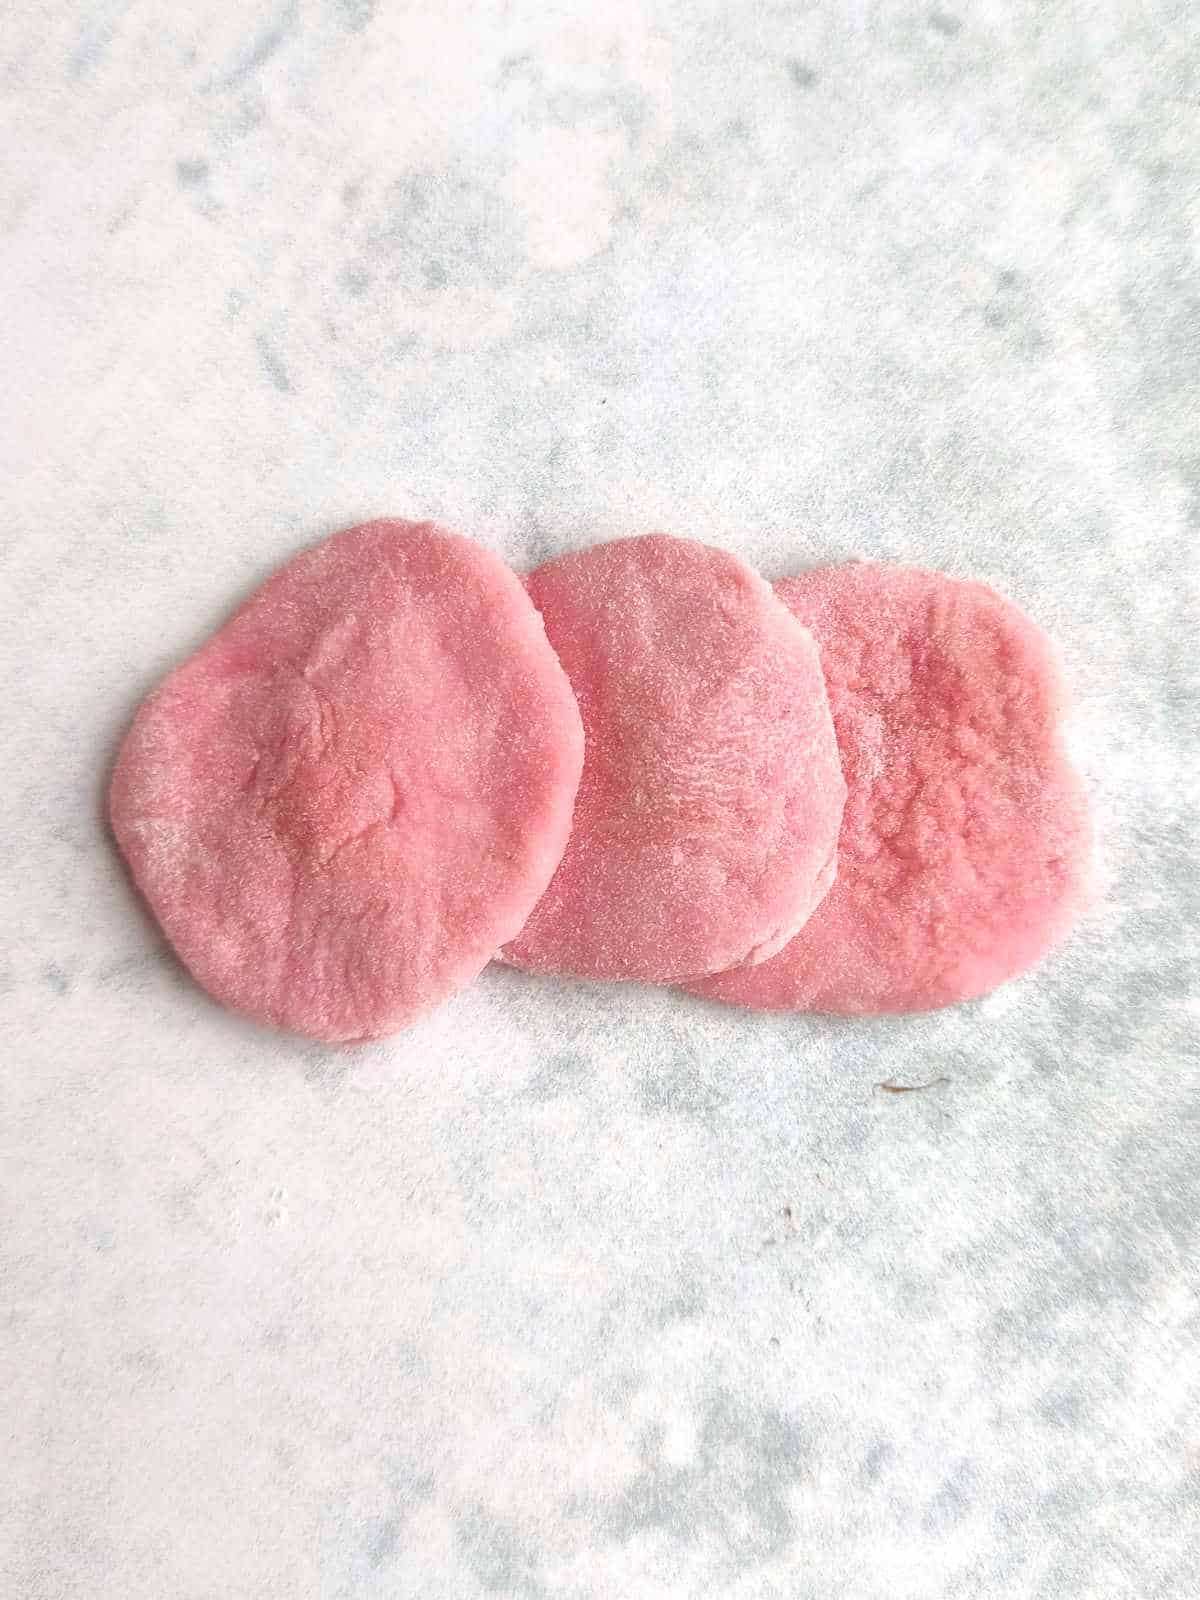 small dough discs to form rose petals.